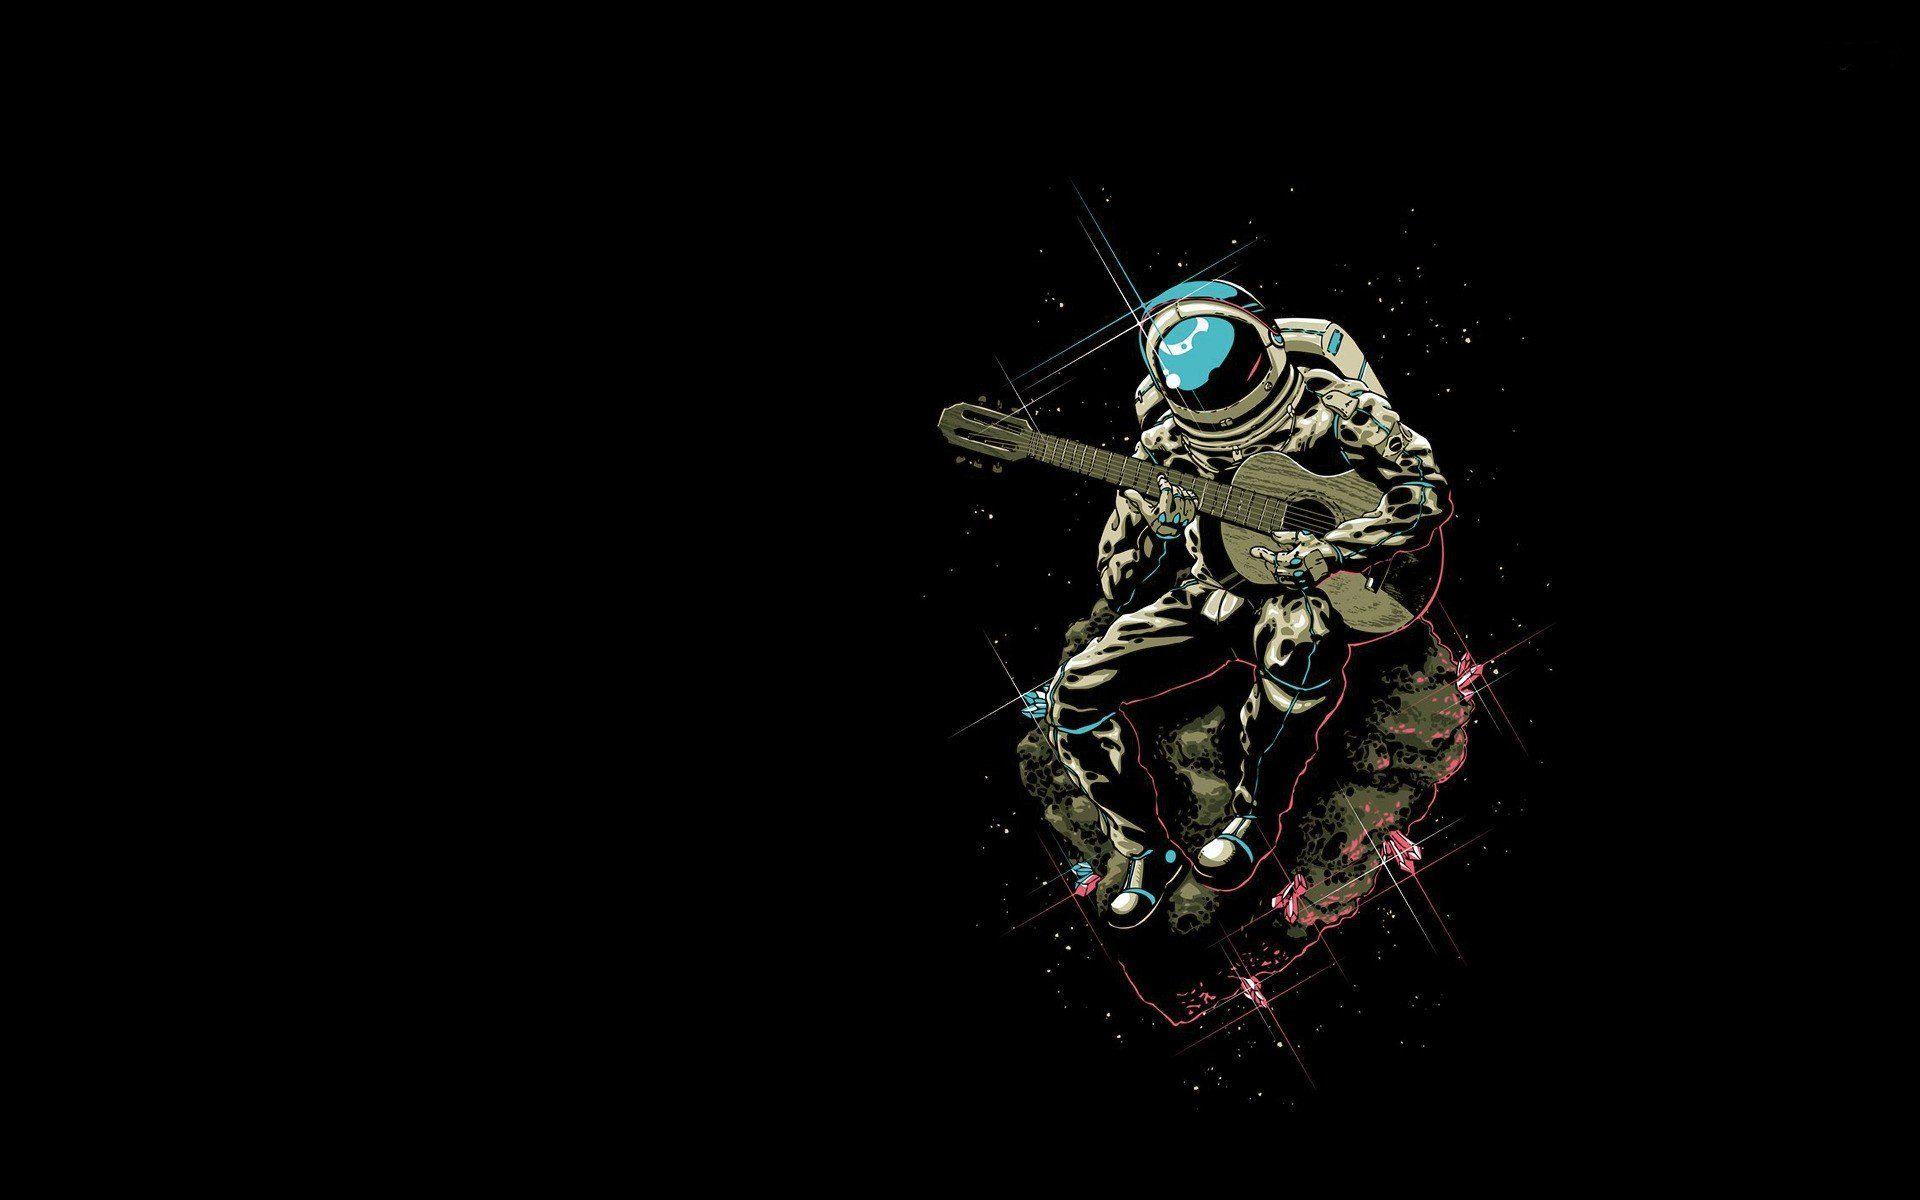 Dark Astronaut Wallpapers - Top Free Dark Astronaut Backgrounds